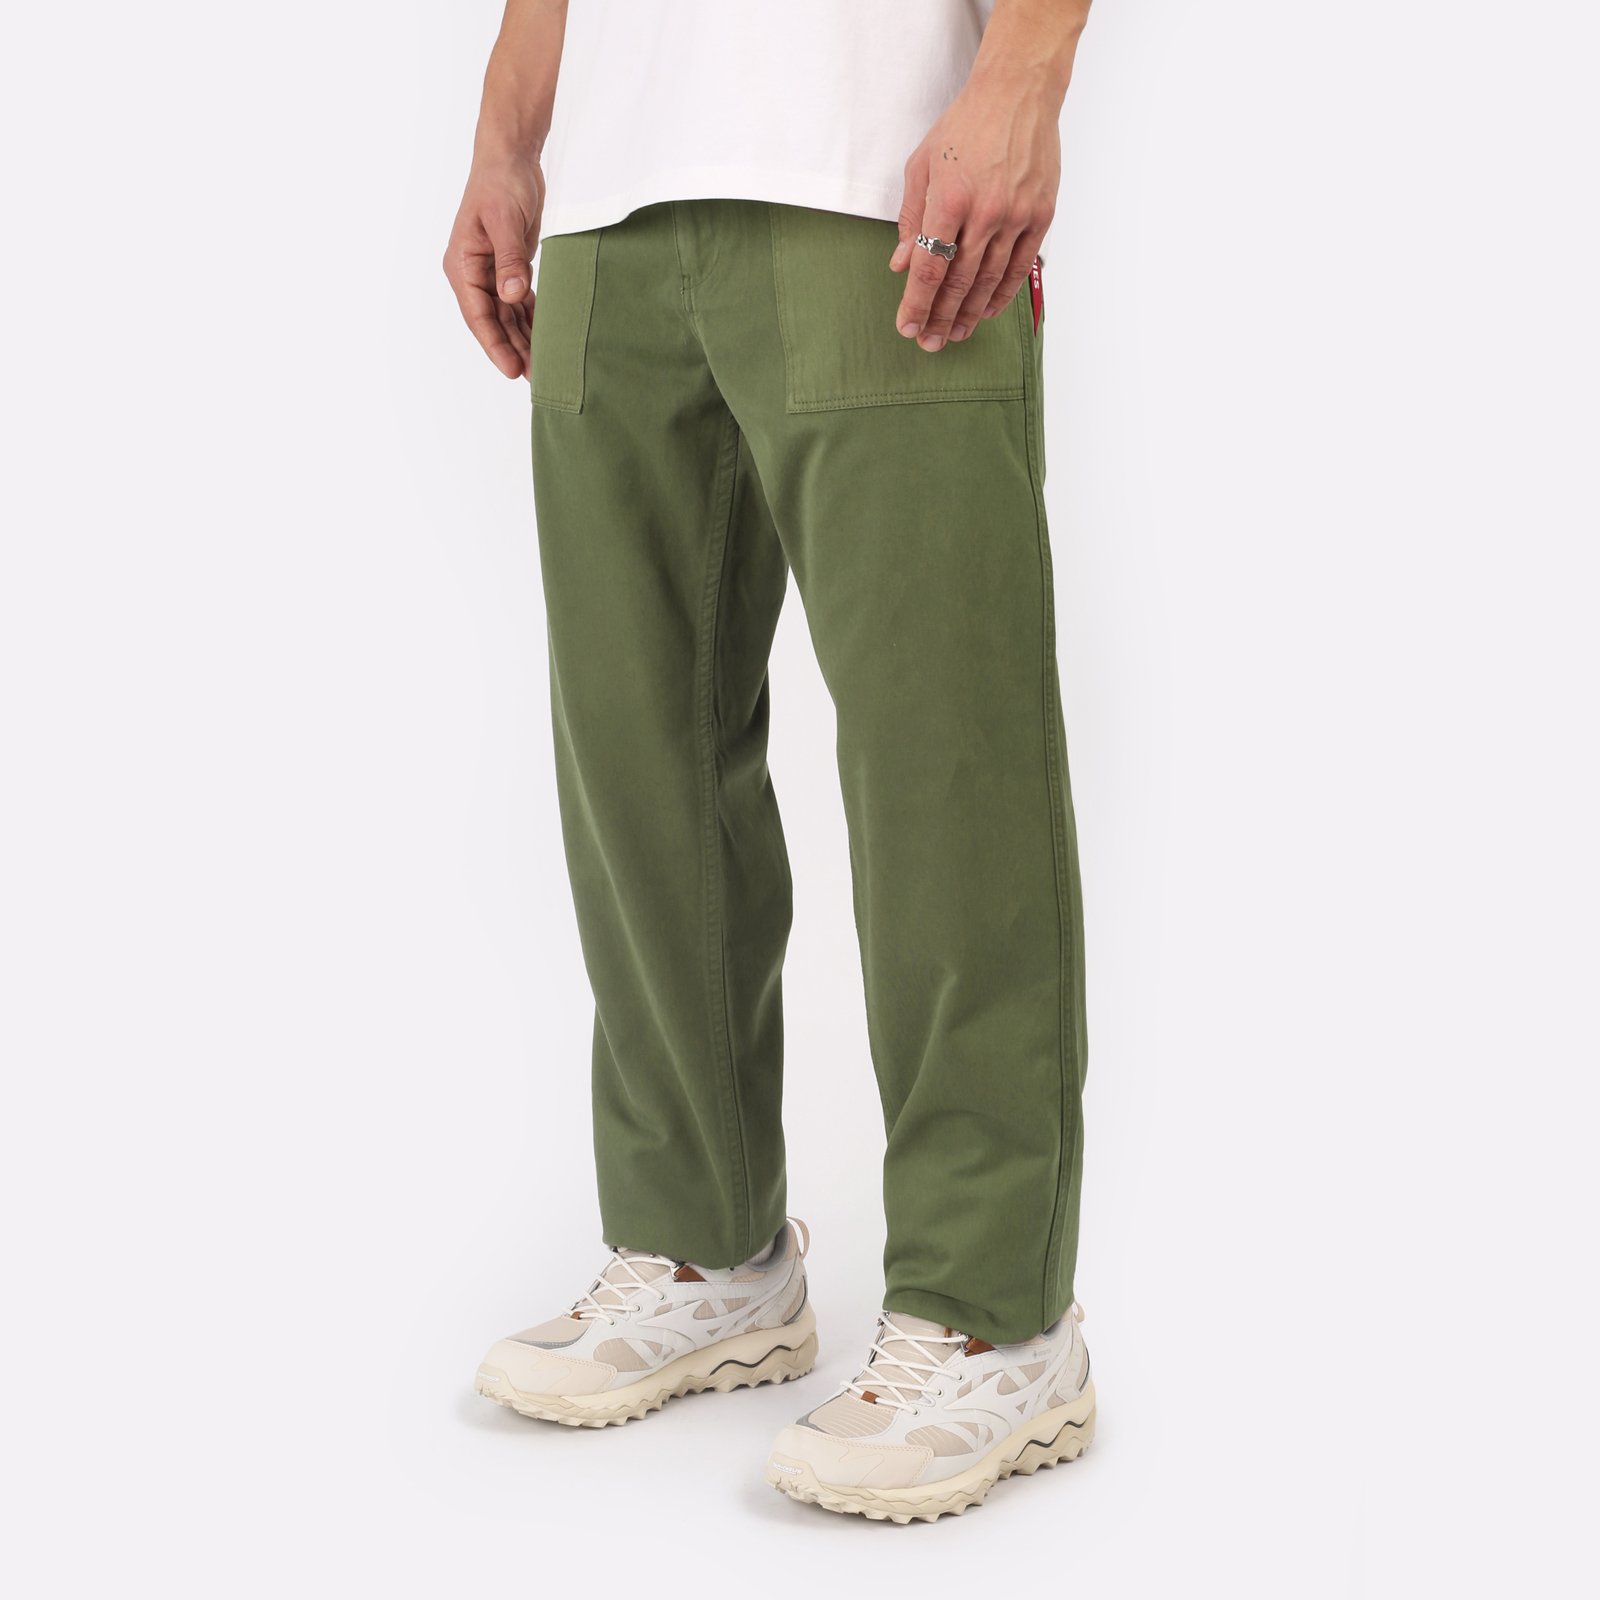 Мужские брюки Alpha Industries Fatigue Pant (MBO52500C1-OG-107-green)  - цена, описание, фото 3